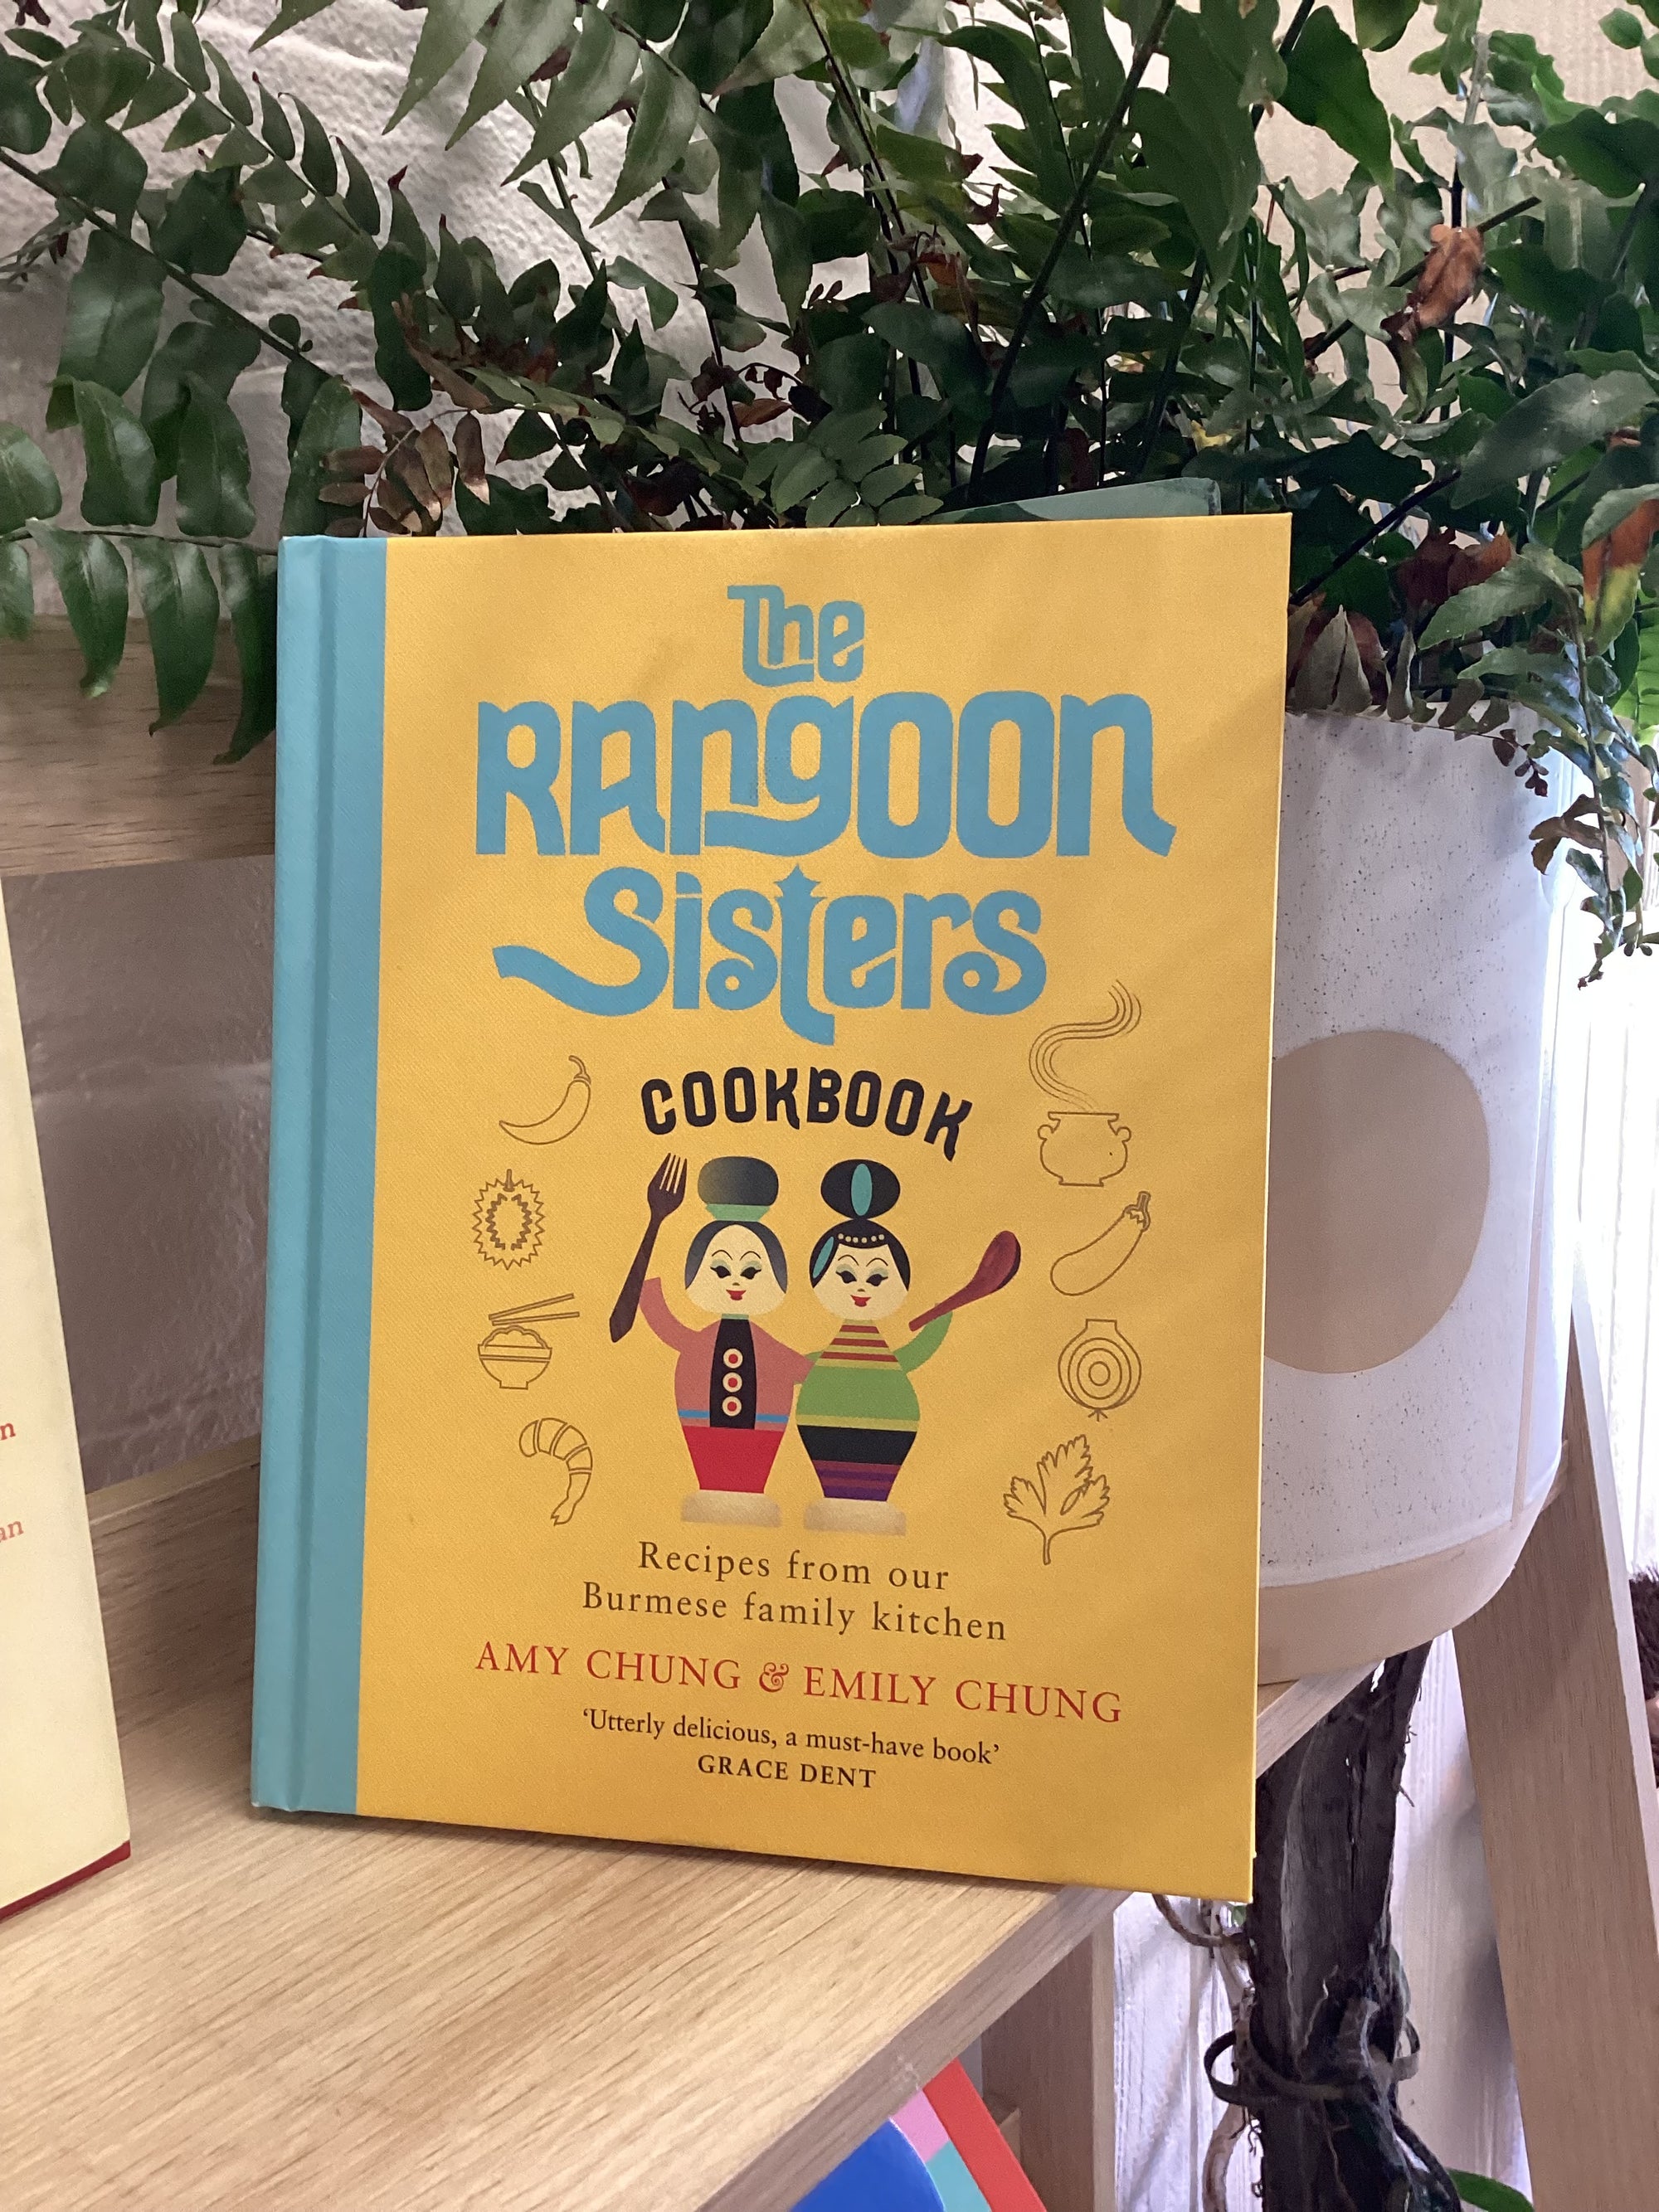 The Rangoon Sisters Cookbook